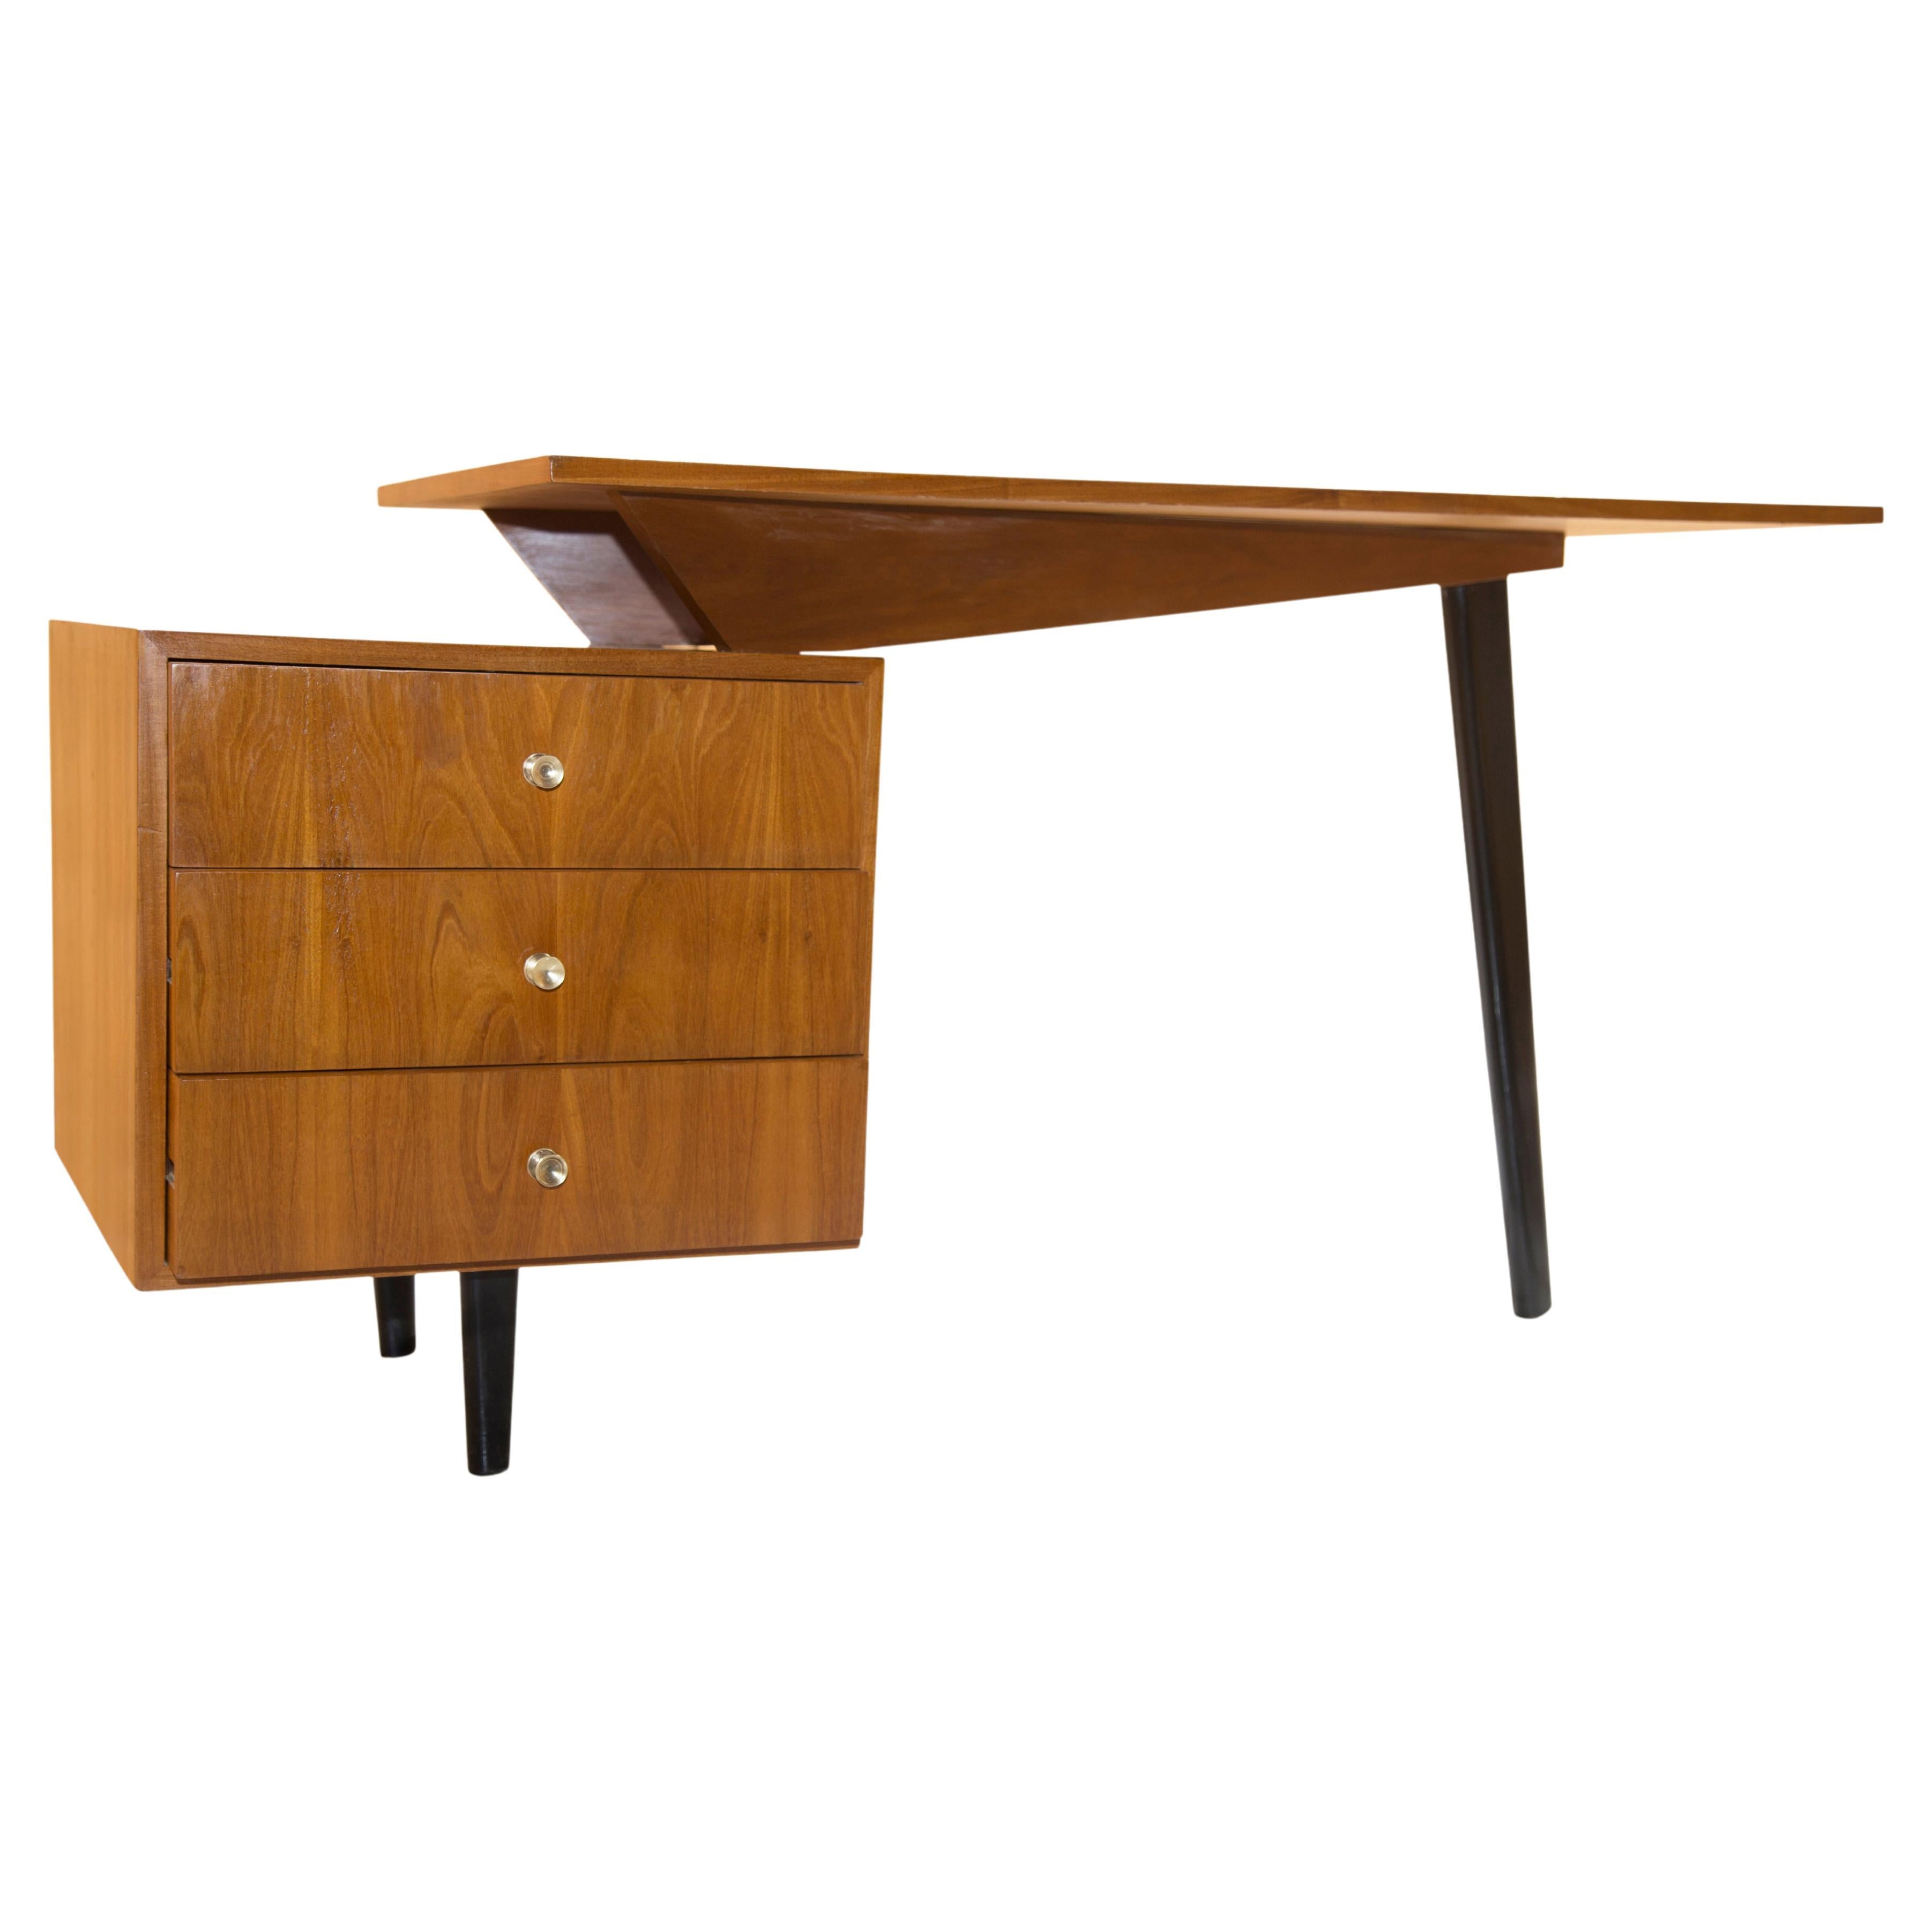 1950's Brazilian Modern Three Legged Desk in Hardwood by Moveis Fratte